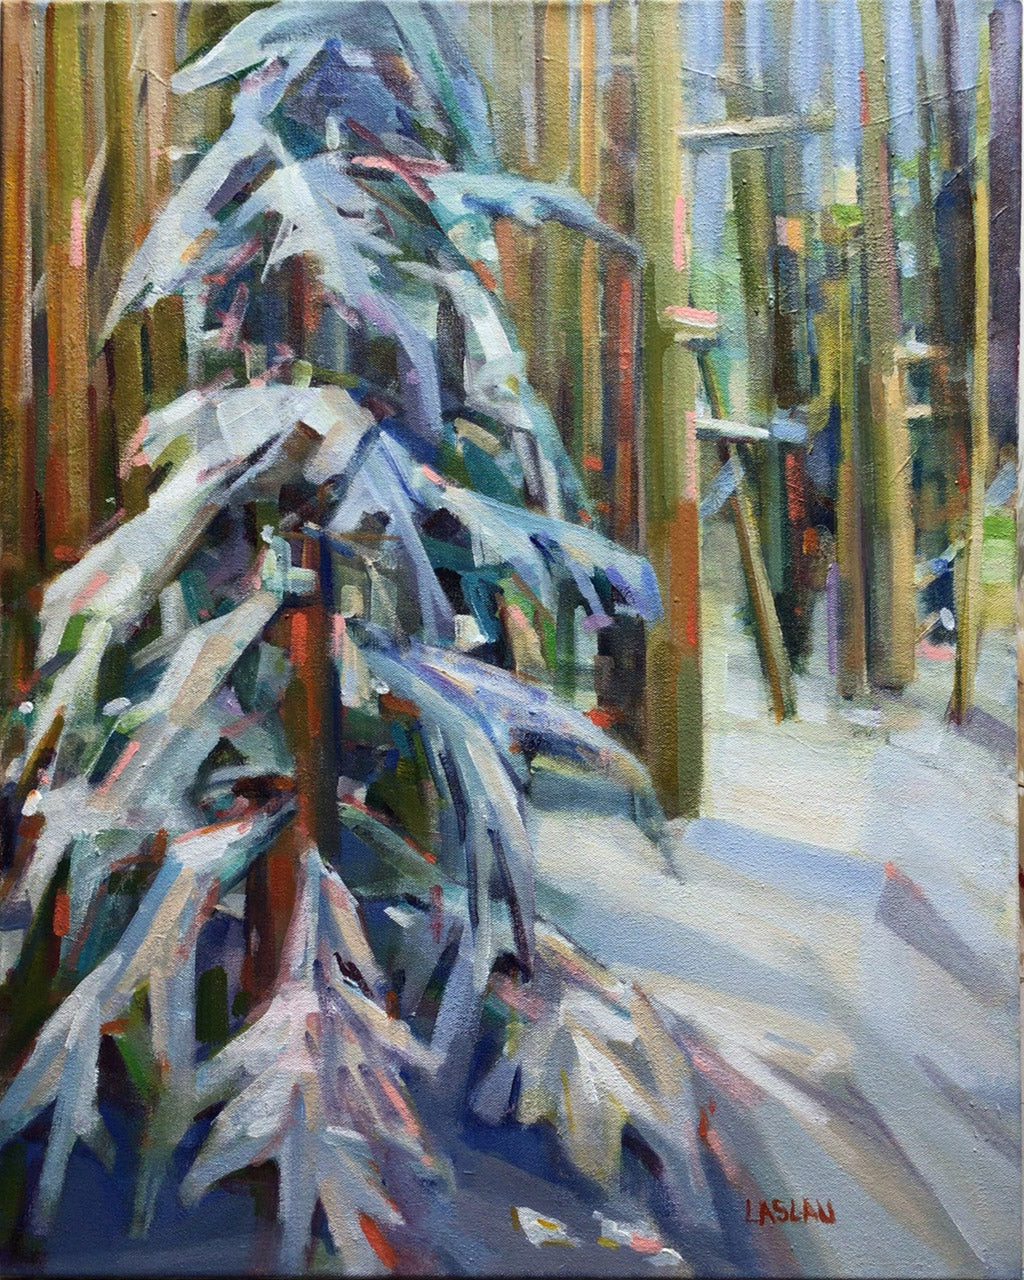 Winter in the Woods by Florica Laslau